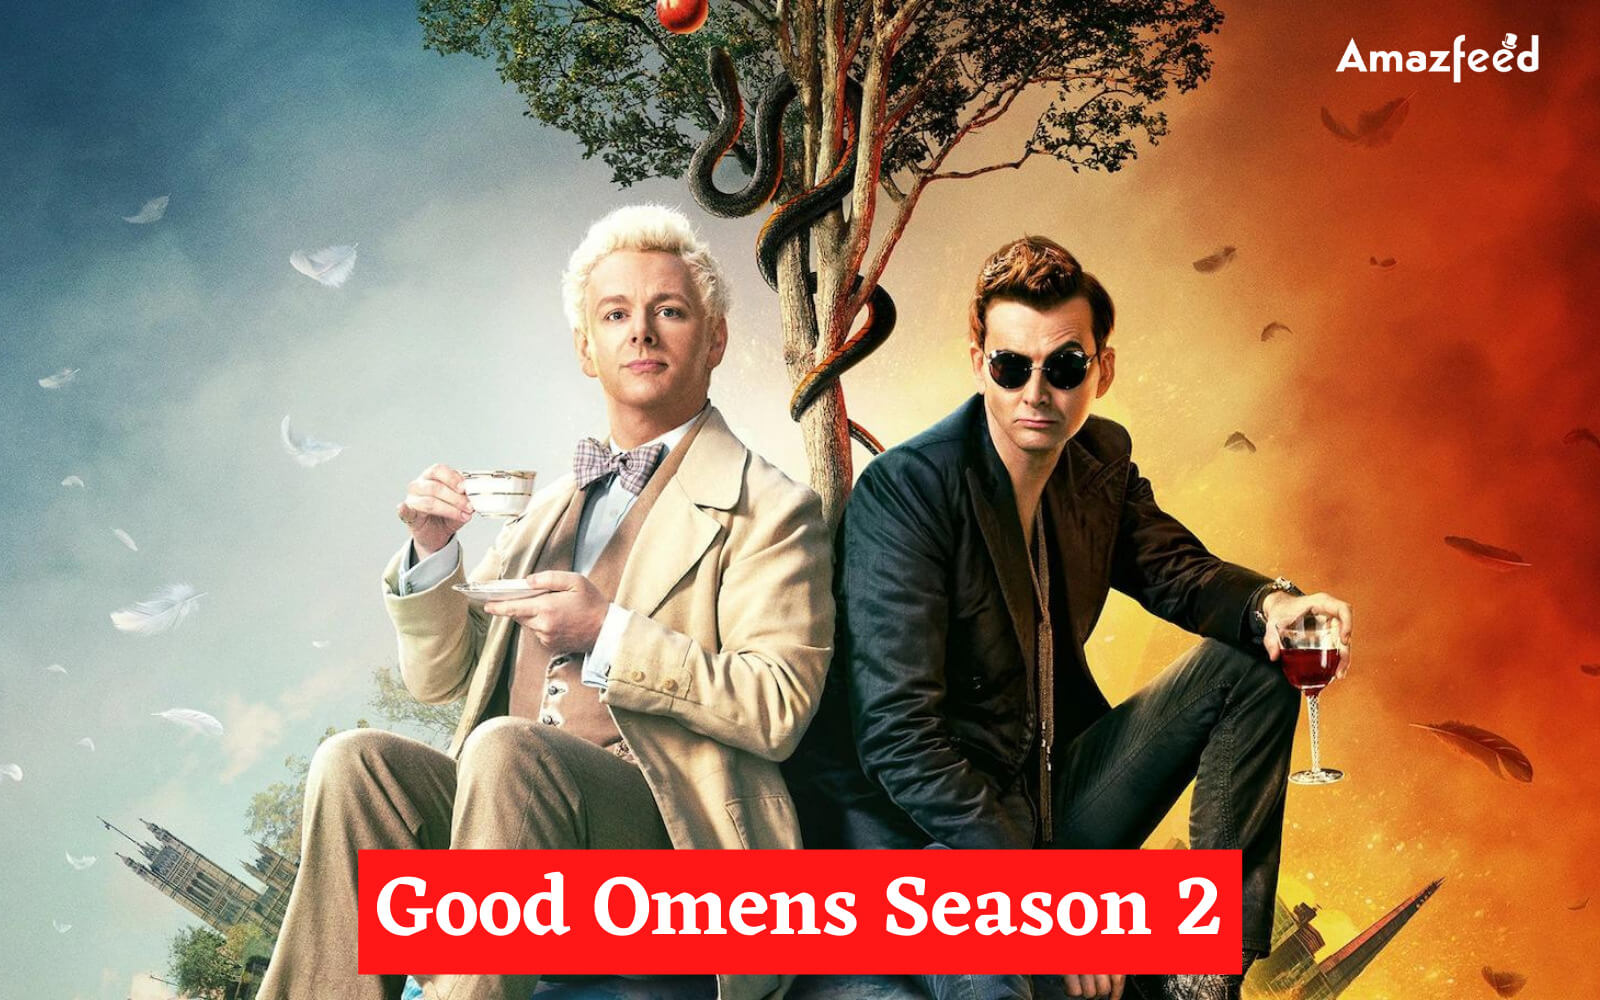 Good Omens Season 2.3